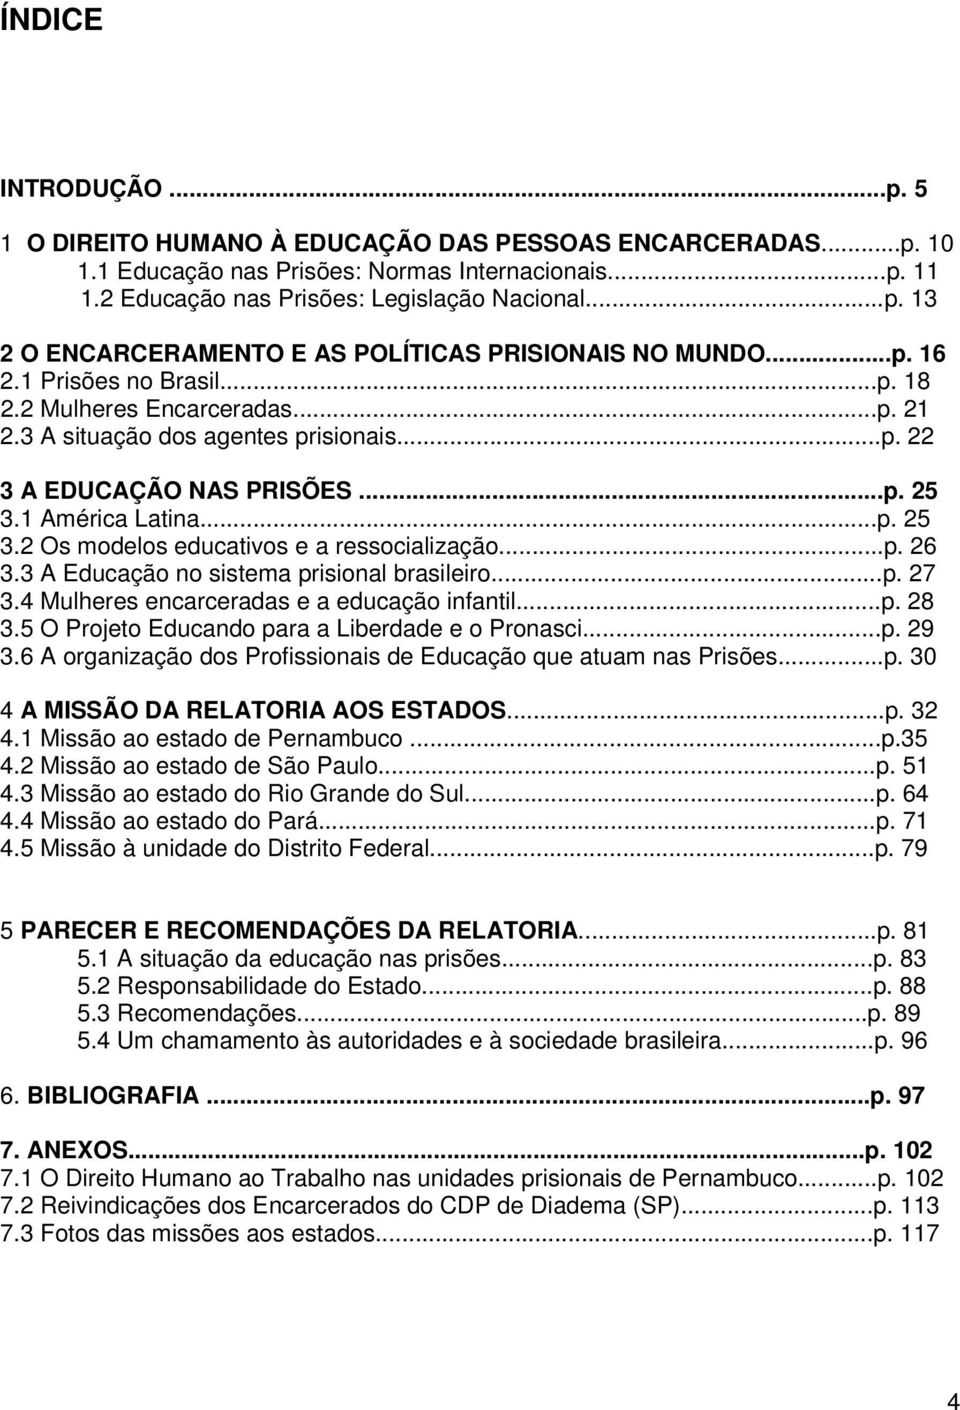 ..p. 26 3.3 A Educação no sistema prisional brasileiro...p. 27 3.4 Mulheres encarceradas e a educação infantil...p. 28 3.5 O Projeto Educando para a Liberdade e o Pronasci...p. 29 3.